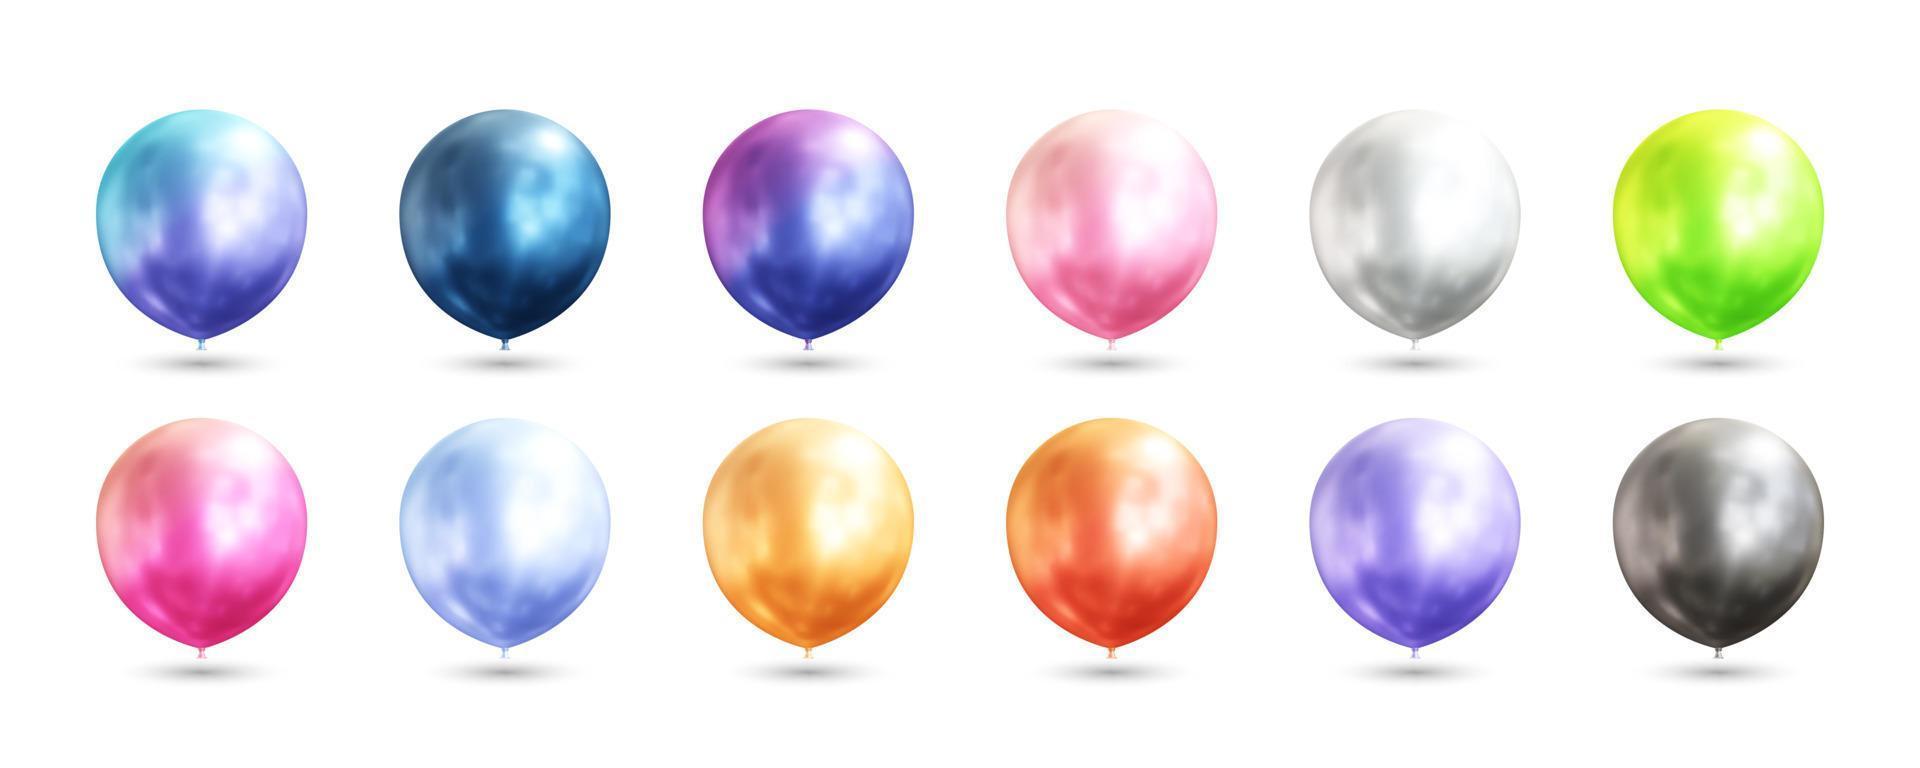 ballons colorés réalistes illustration vectorielle 3d vecteur